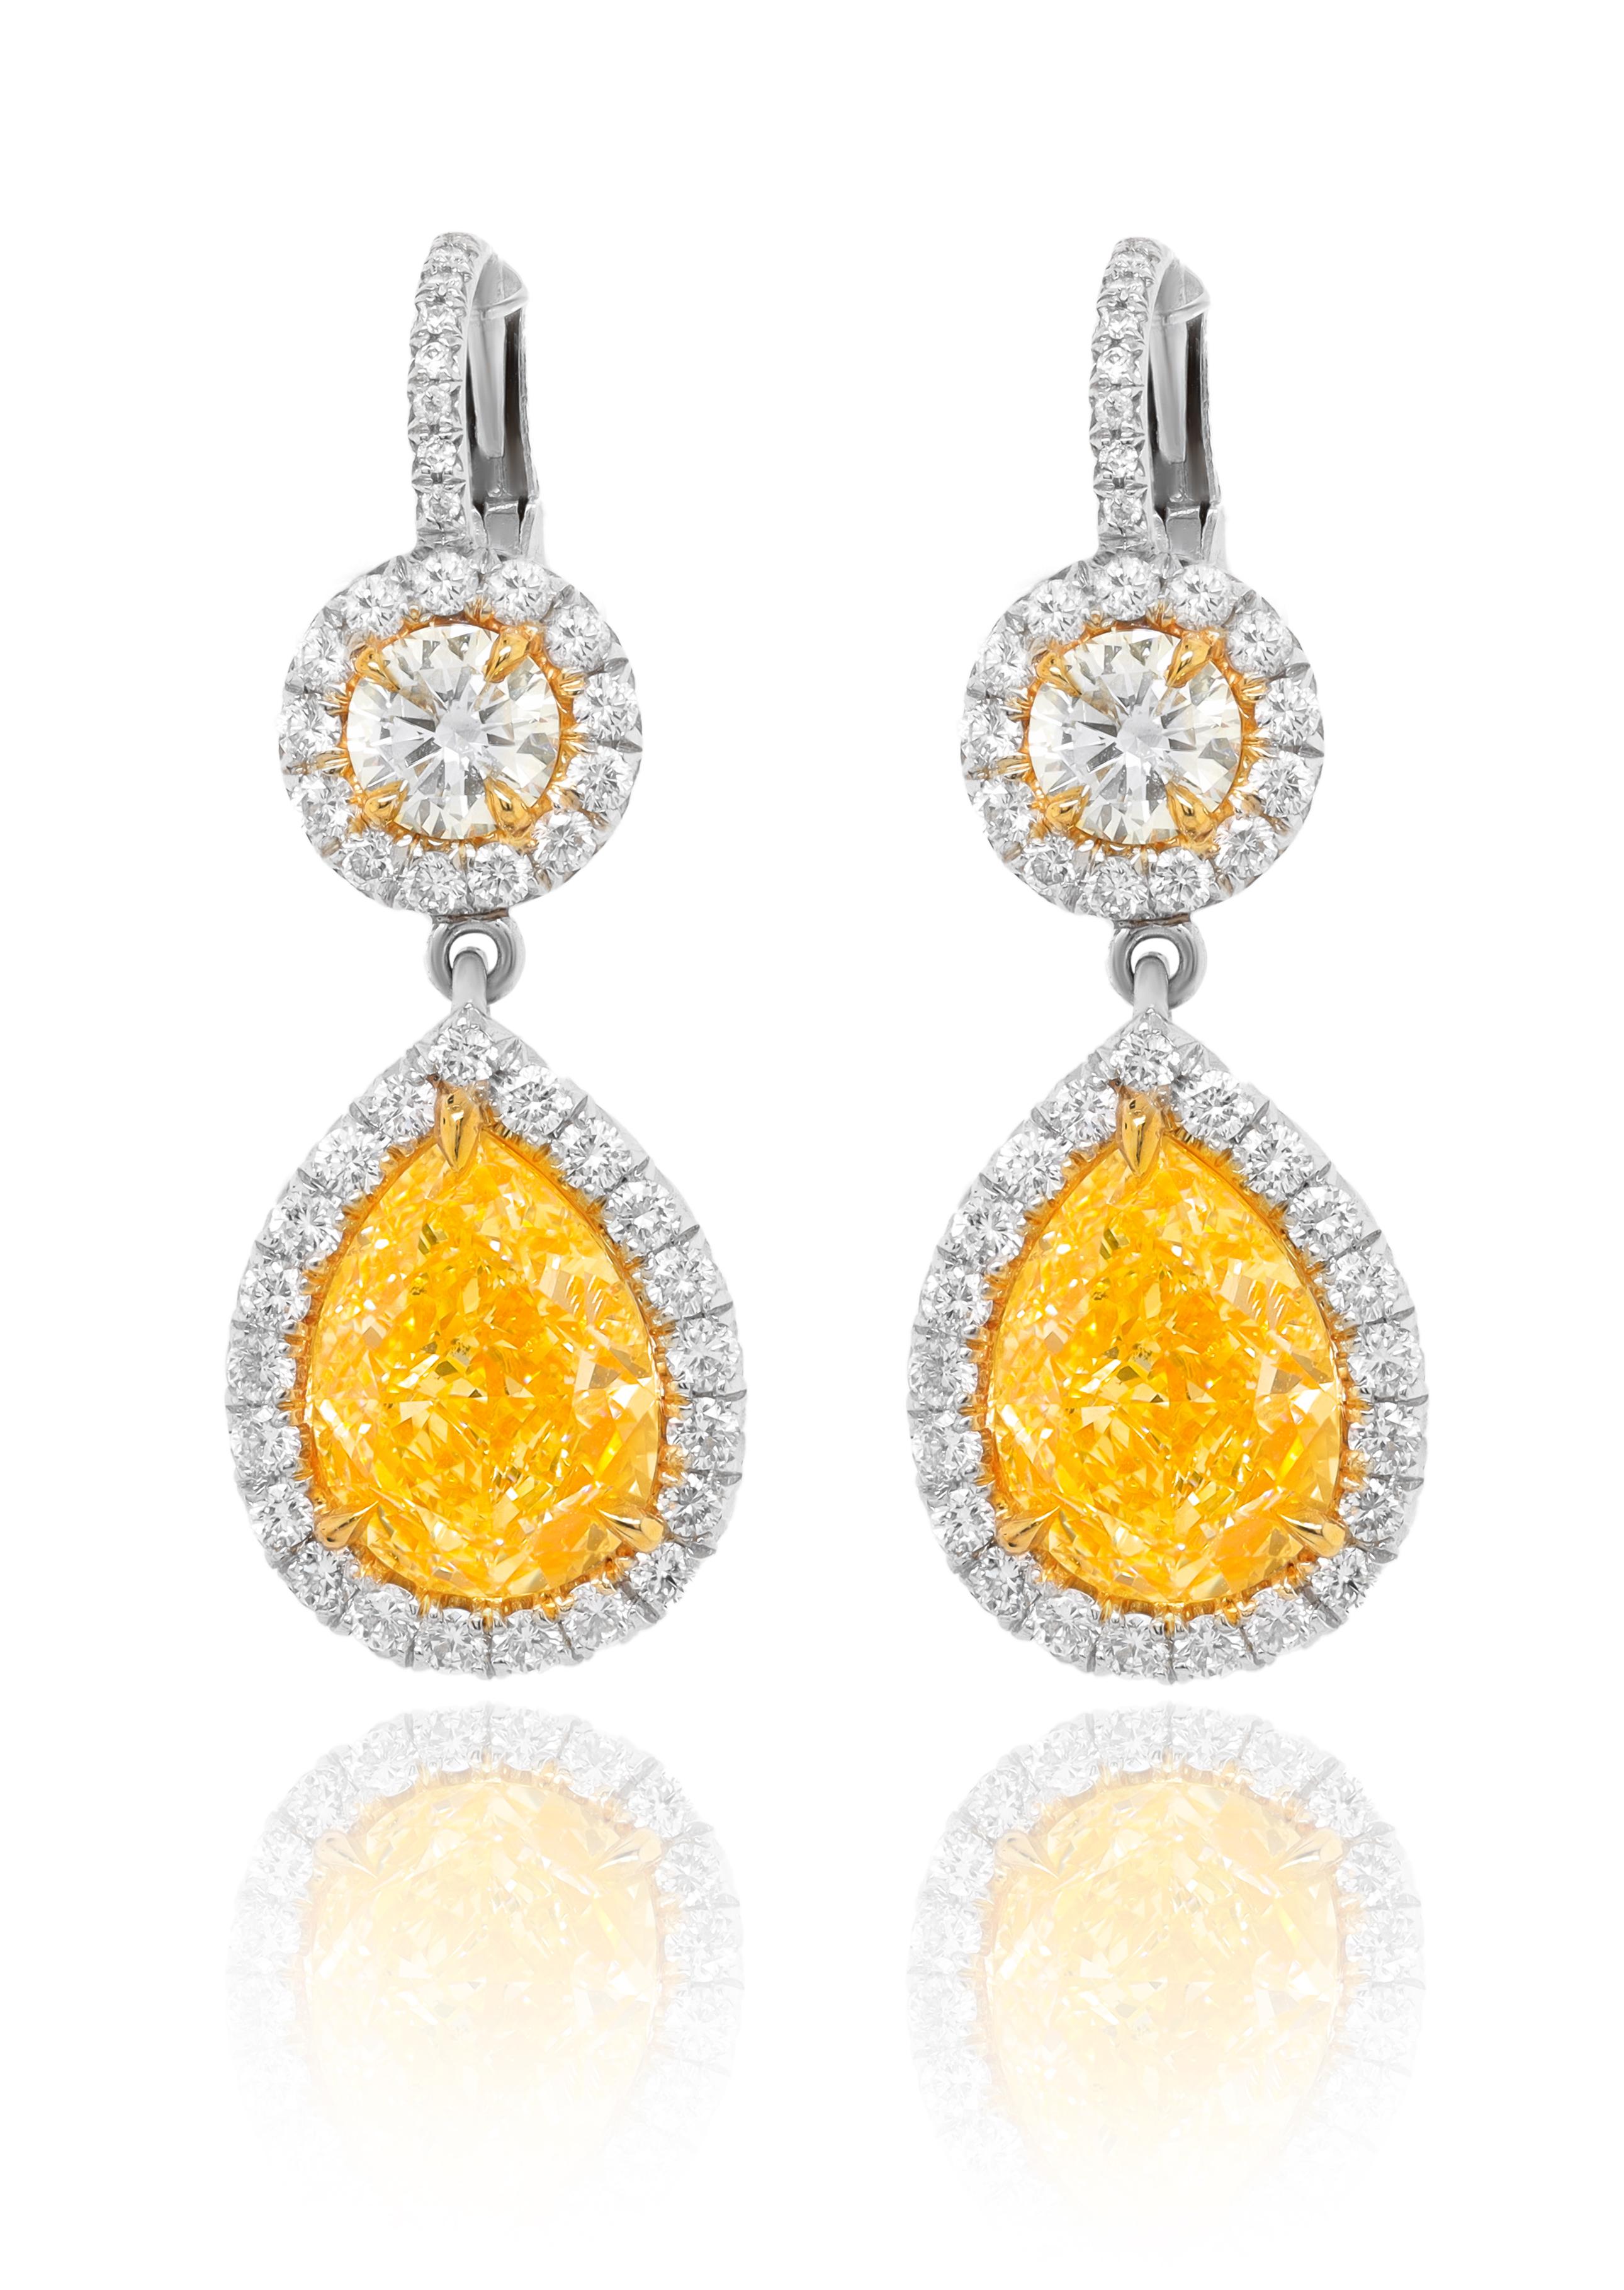 Platin und 18kt Gelbgold fancy gelben Diamanten Ohrringe, gia zertifiziert verfügt über 4,54ct von zwei birnenförmigen Diamanten fy vs-vs1 und 1,70ct Mikropave rd Diamanten rundum. (psc289 & psc290)
